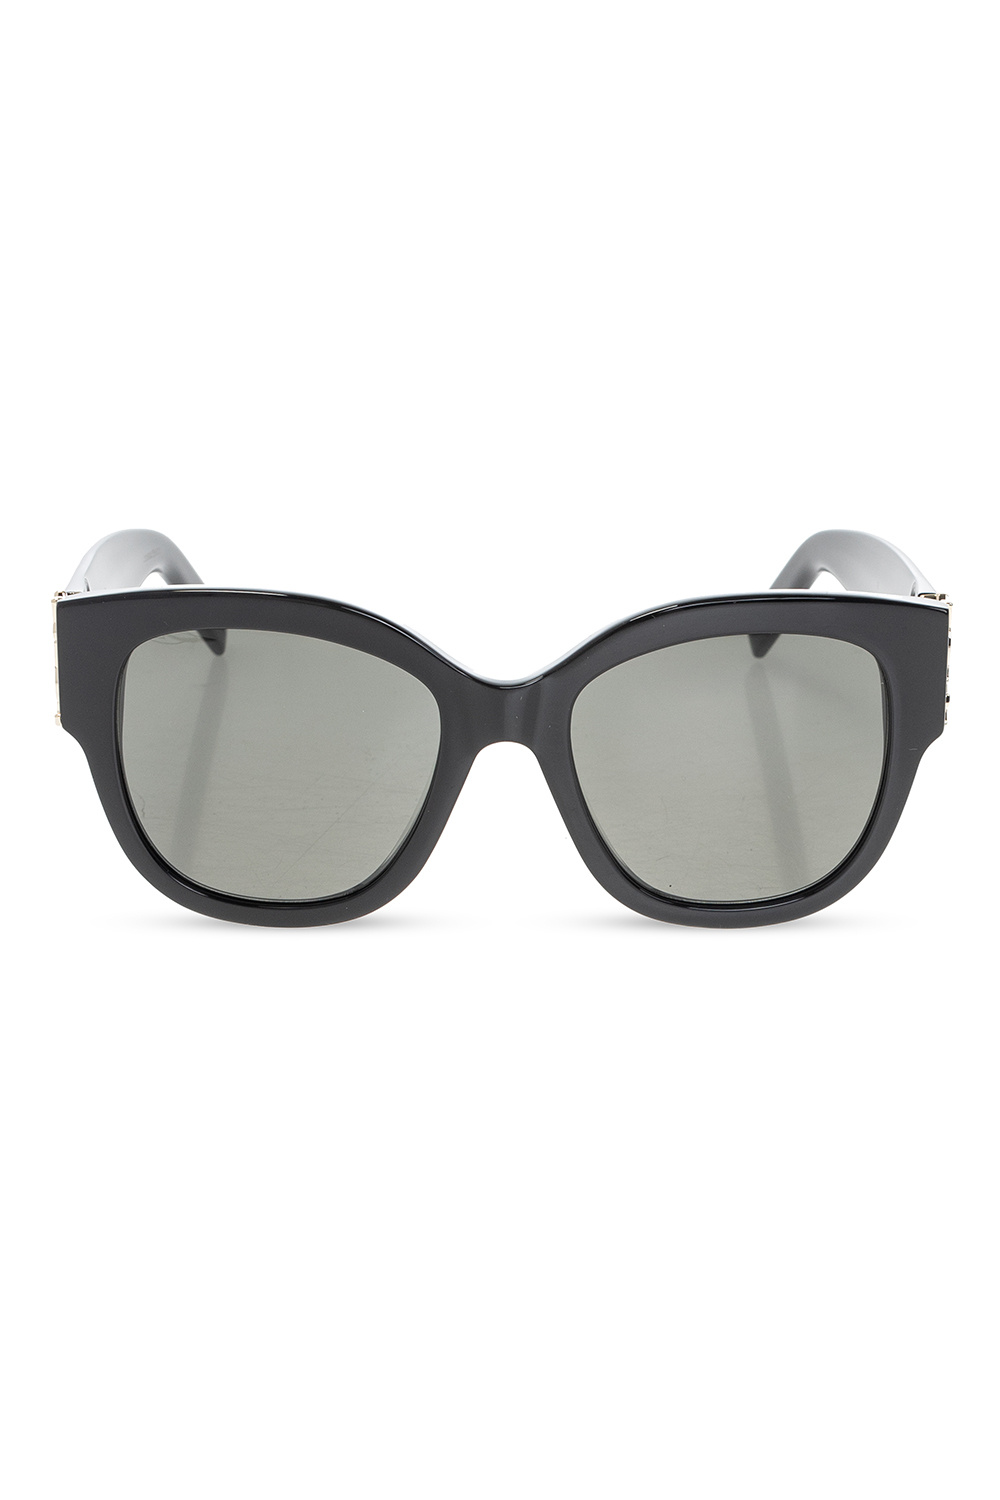 SpiderWire SPW009 Polarized Sunglasses